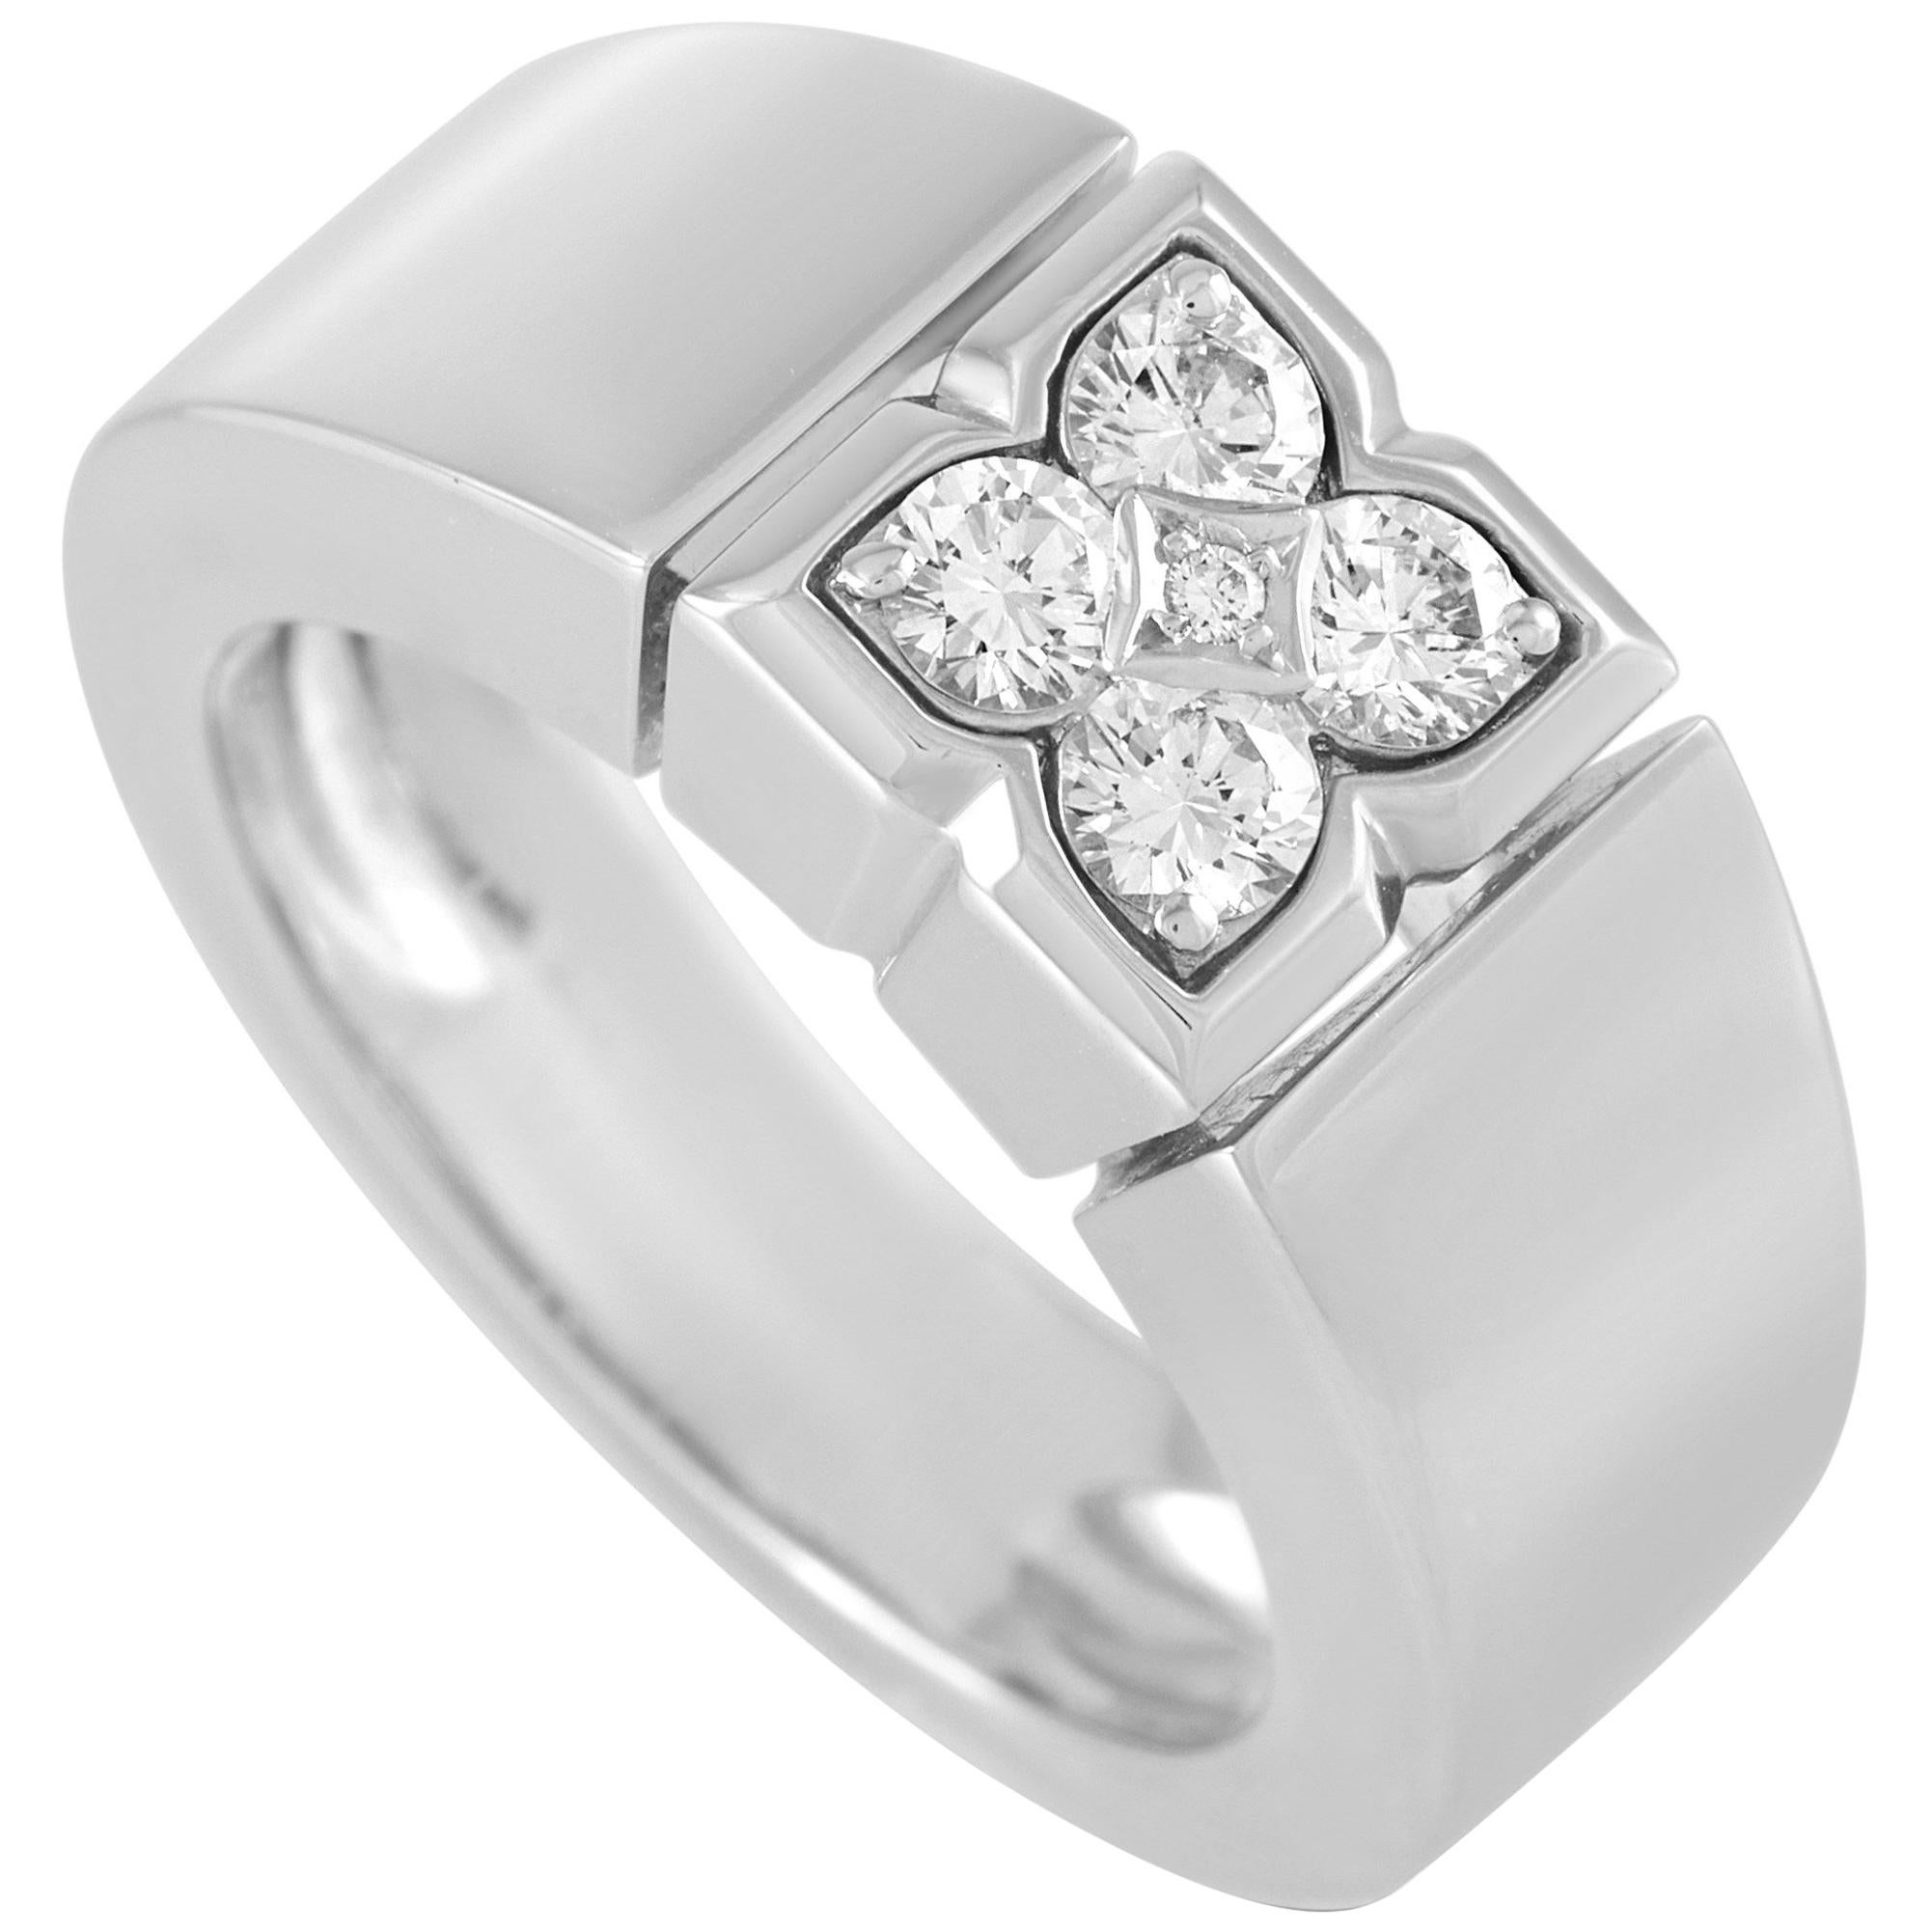 Van Cleef & Arpels 18 Karat White Gold 0.40 Carat Diamond Ring